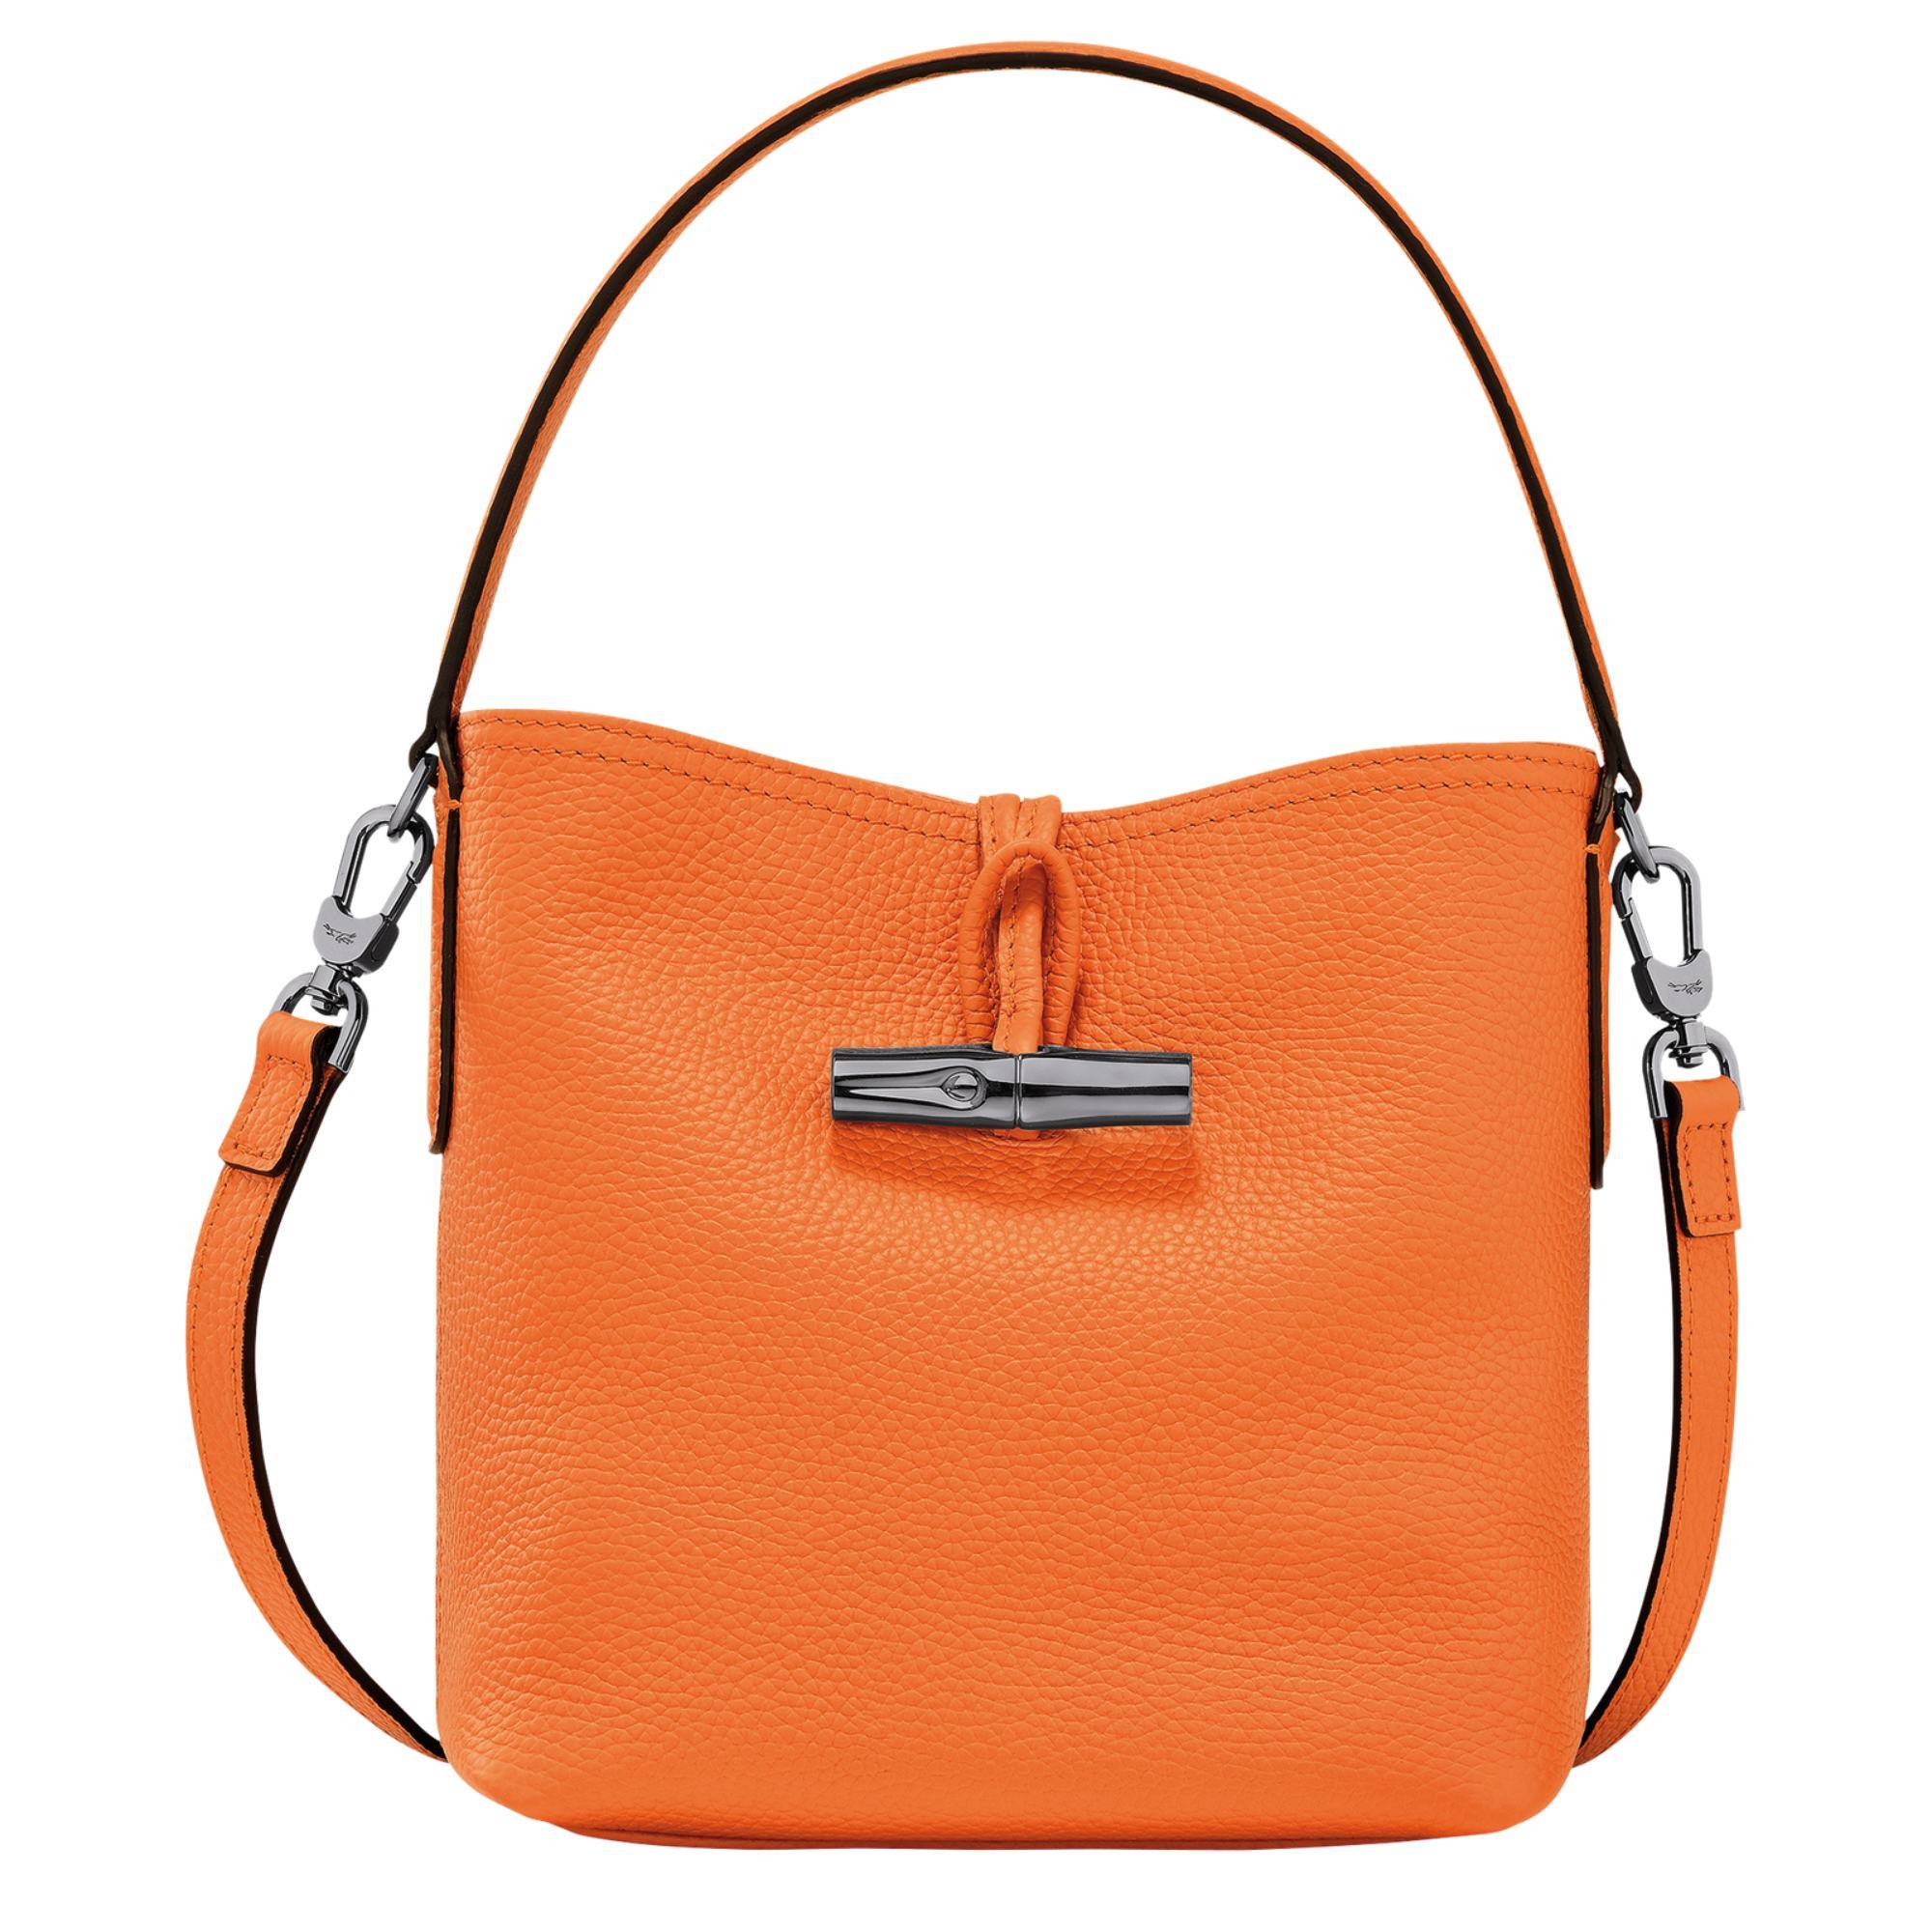 Sac seau Longchamp Roseau Essential S 10159 968 217 couleur orange, vue de face